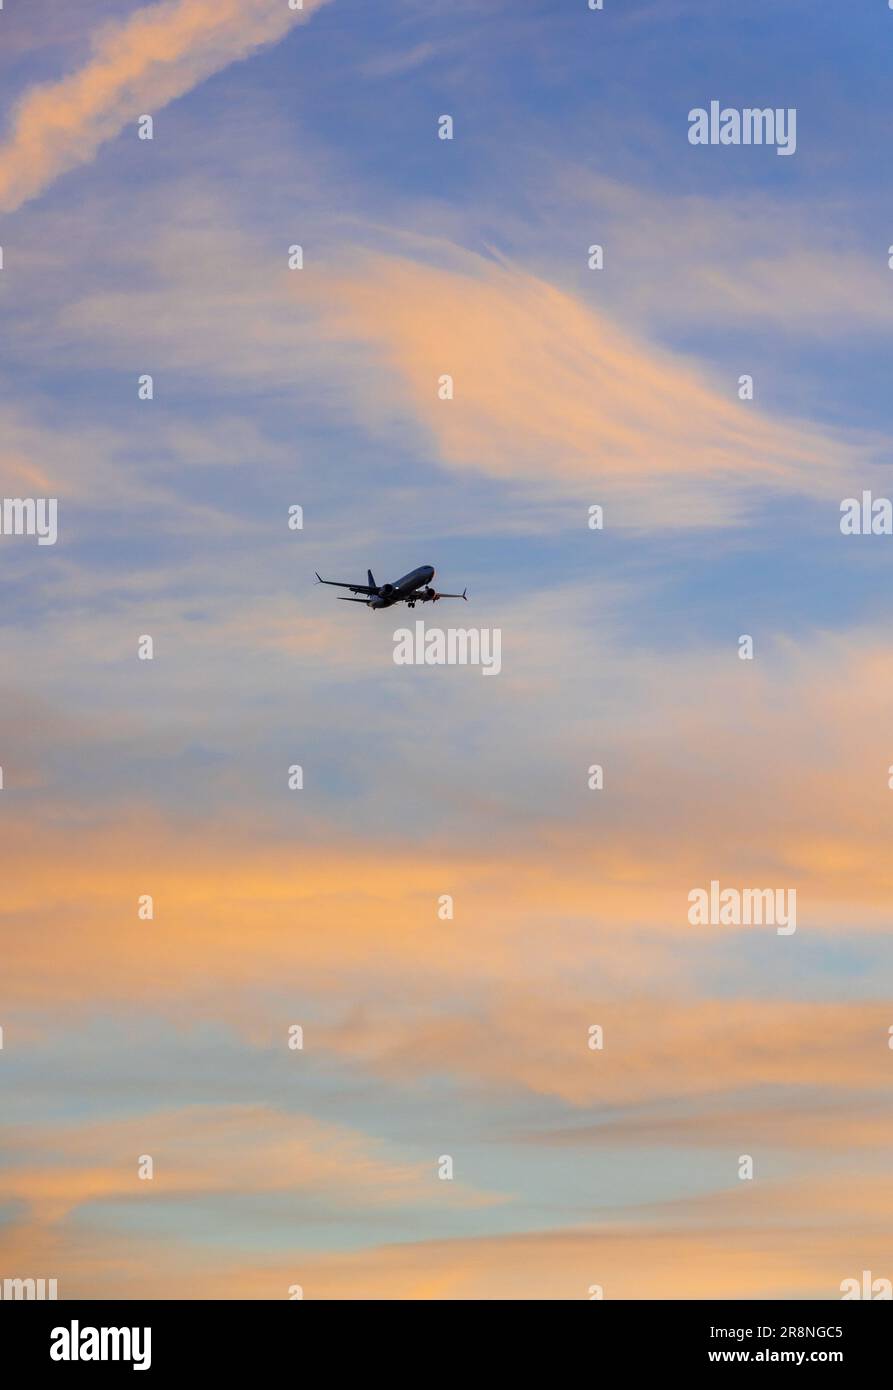 Ein modernes Passagierflugzeug, das bei Sonnenuntergang durch einen pastellfarbenen Himmel fliegt Stockfoto